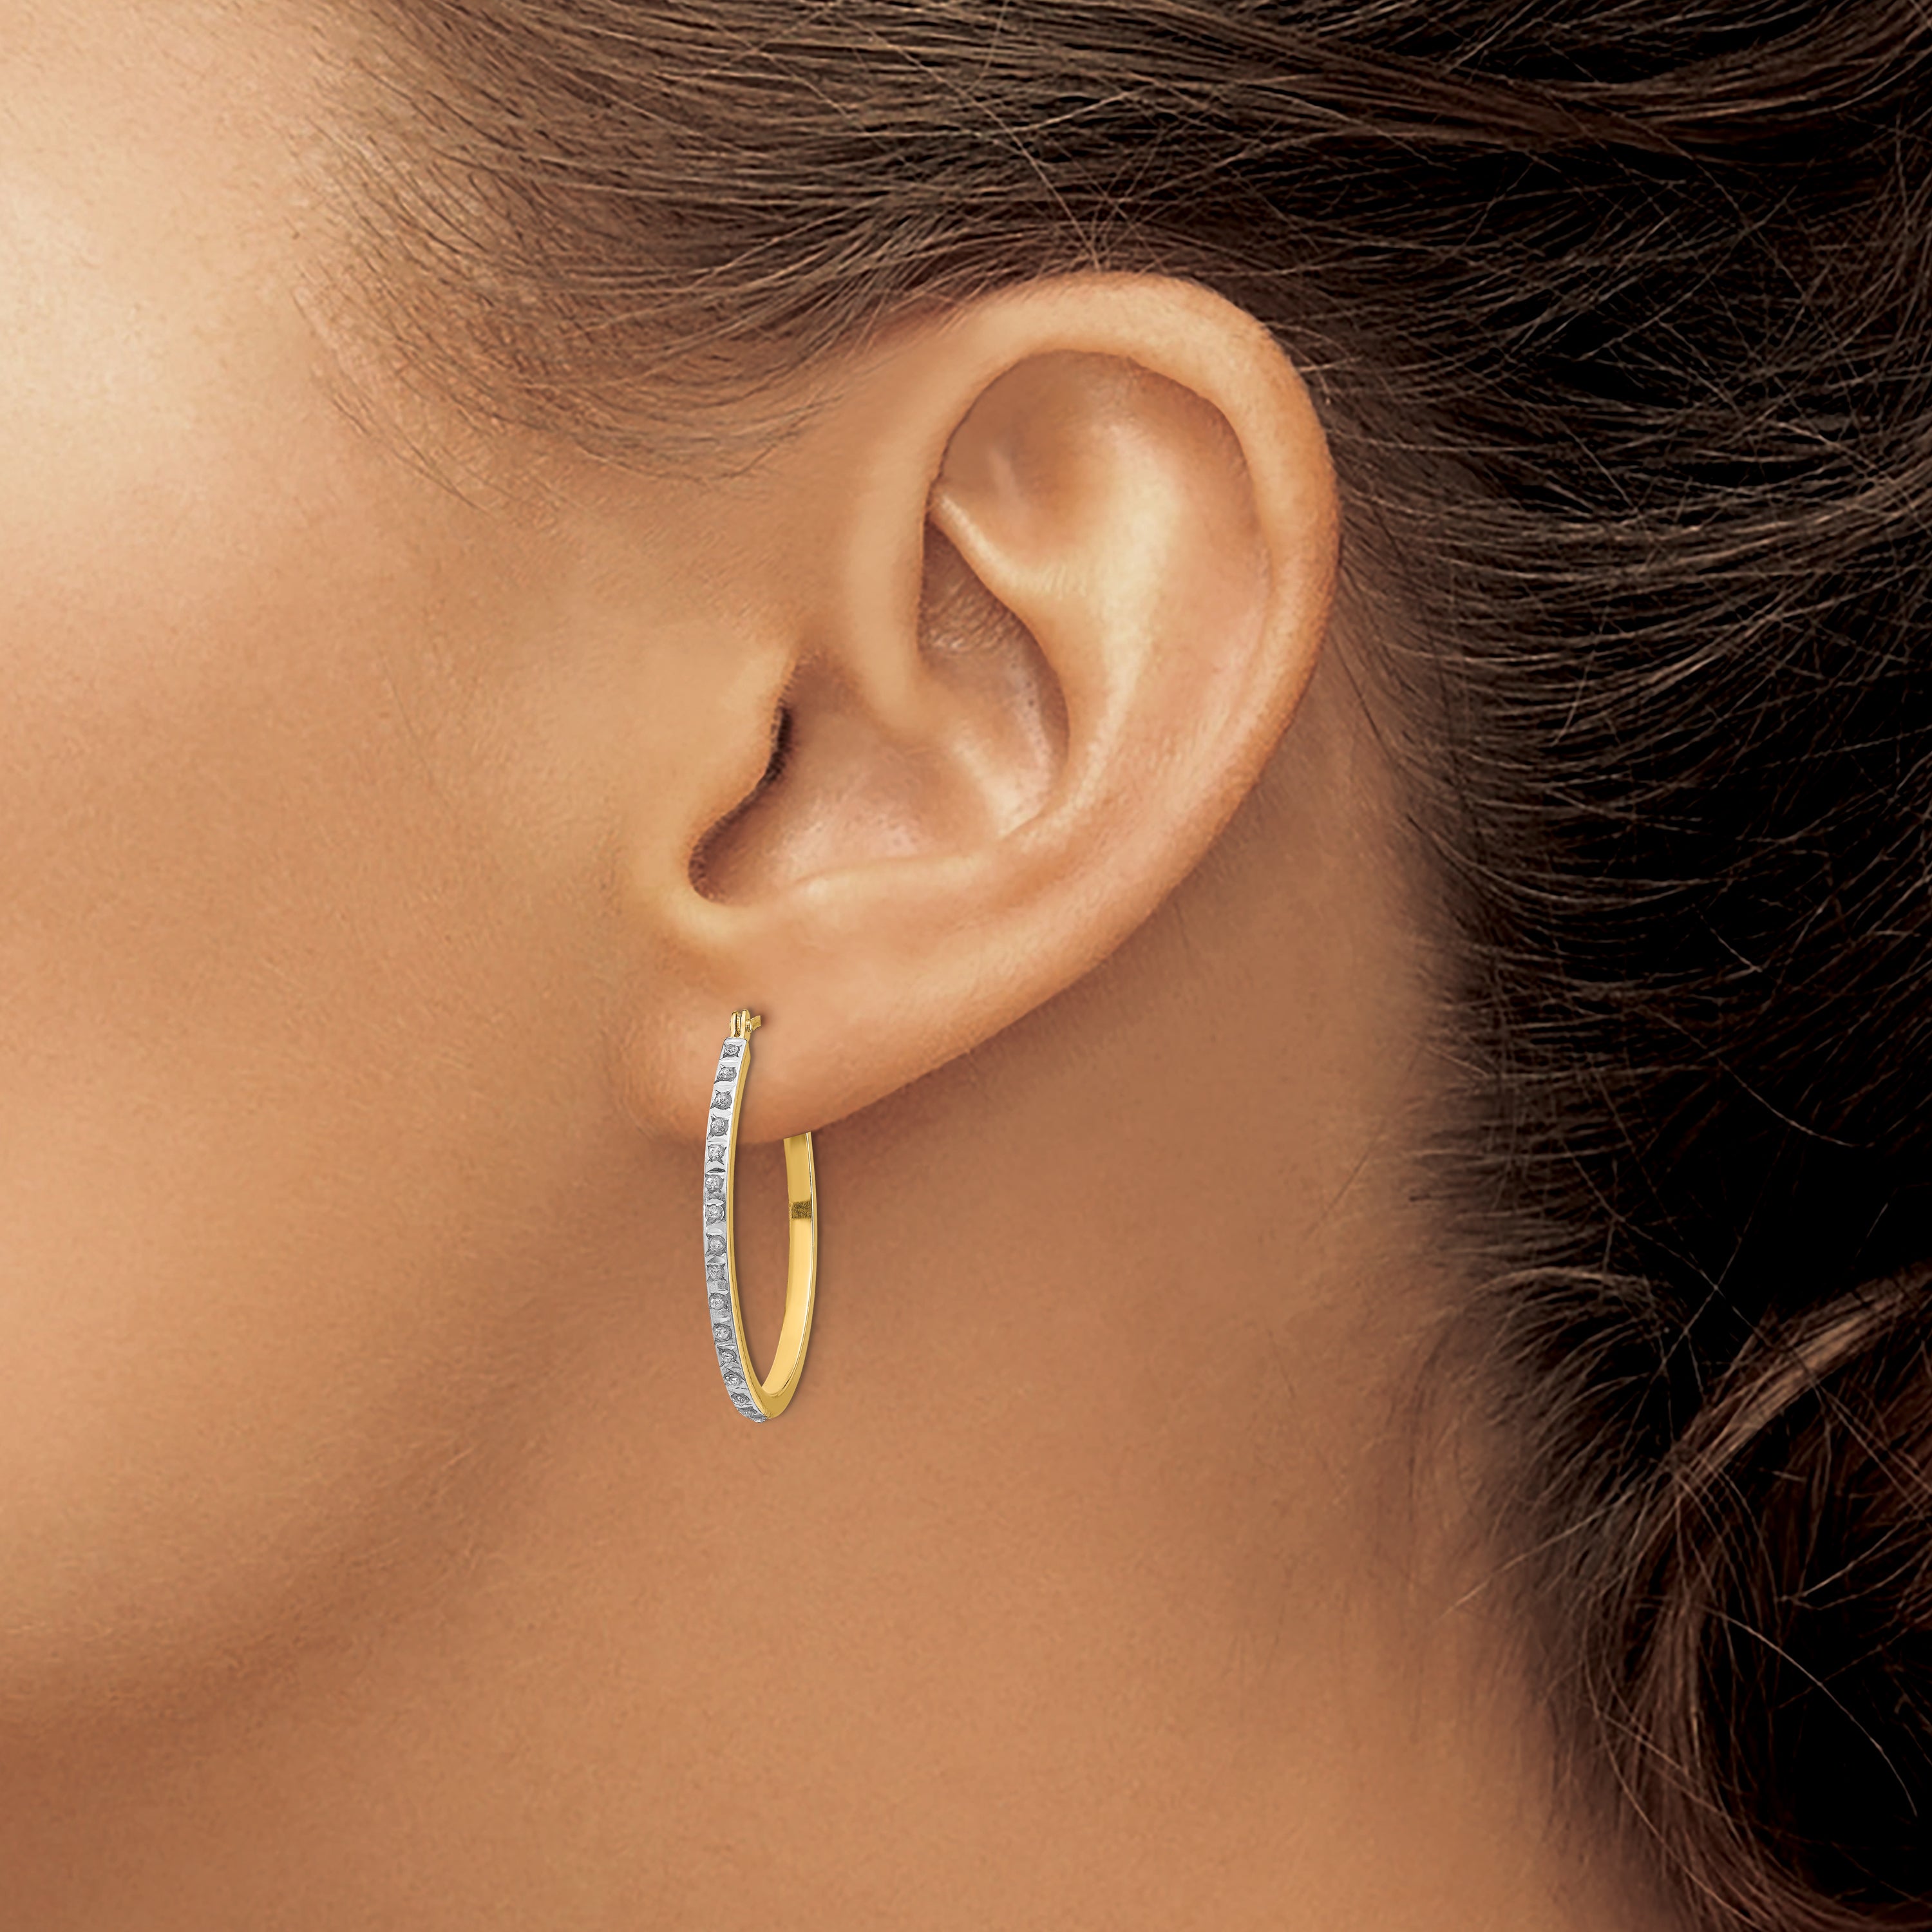 14k Diamond Fascination Oval Hinged Hoop Earrings